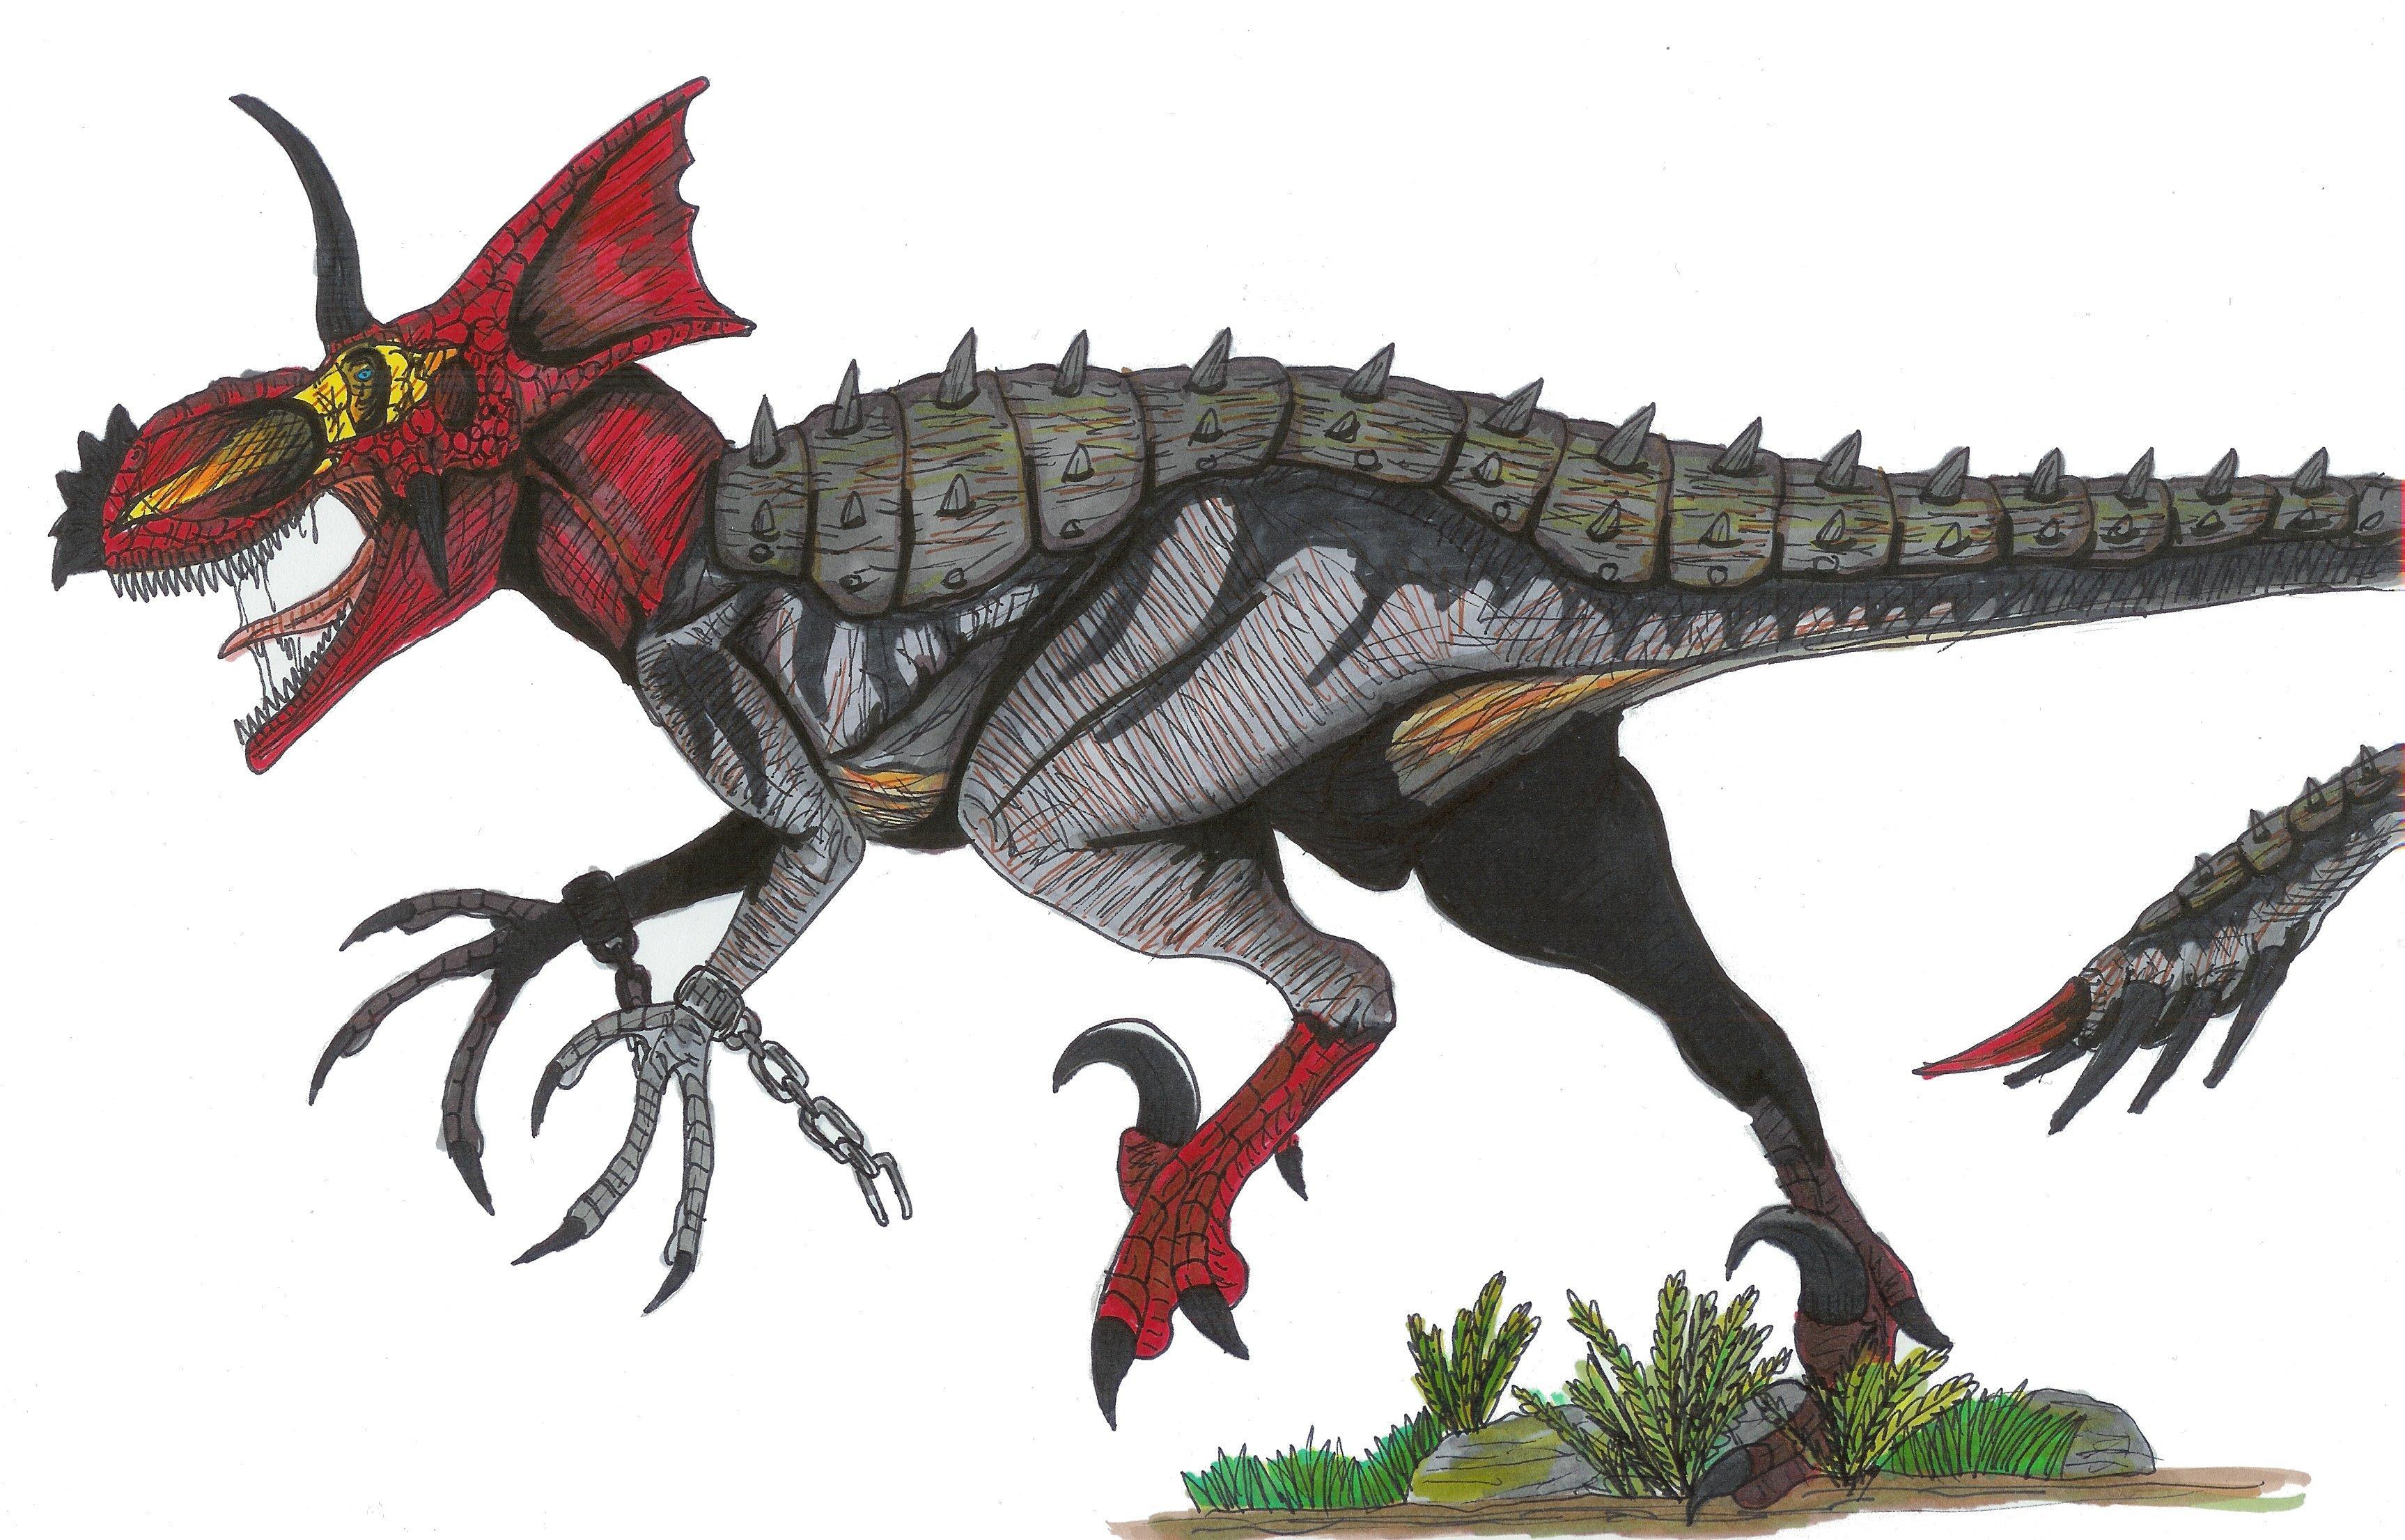 minecraft dinosaurs t rex vs spinosaurus